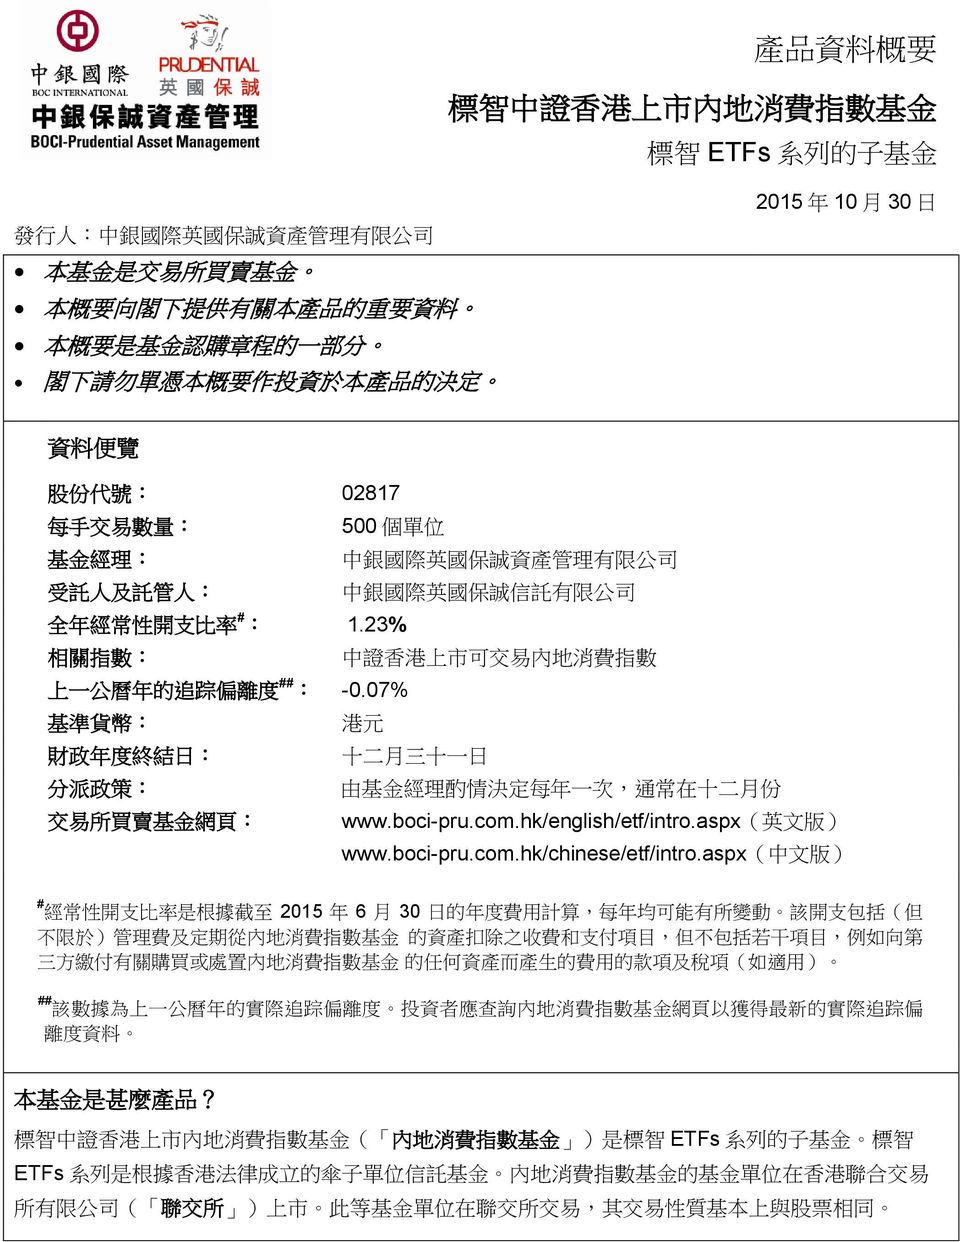 # : 1.23% 相 關 指 數 : 中 證 香 港 上 市 可 交 易 內 地 消 費 指 數 上 一 公 曆 年 的 追 踪 偏 離 度 ## : -0.